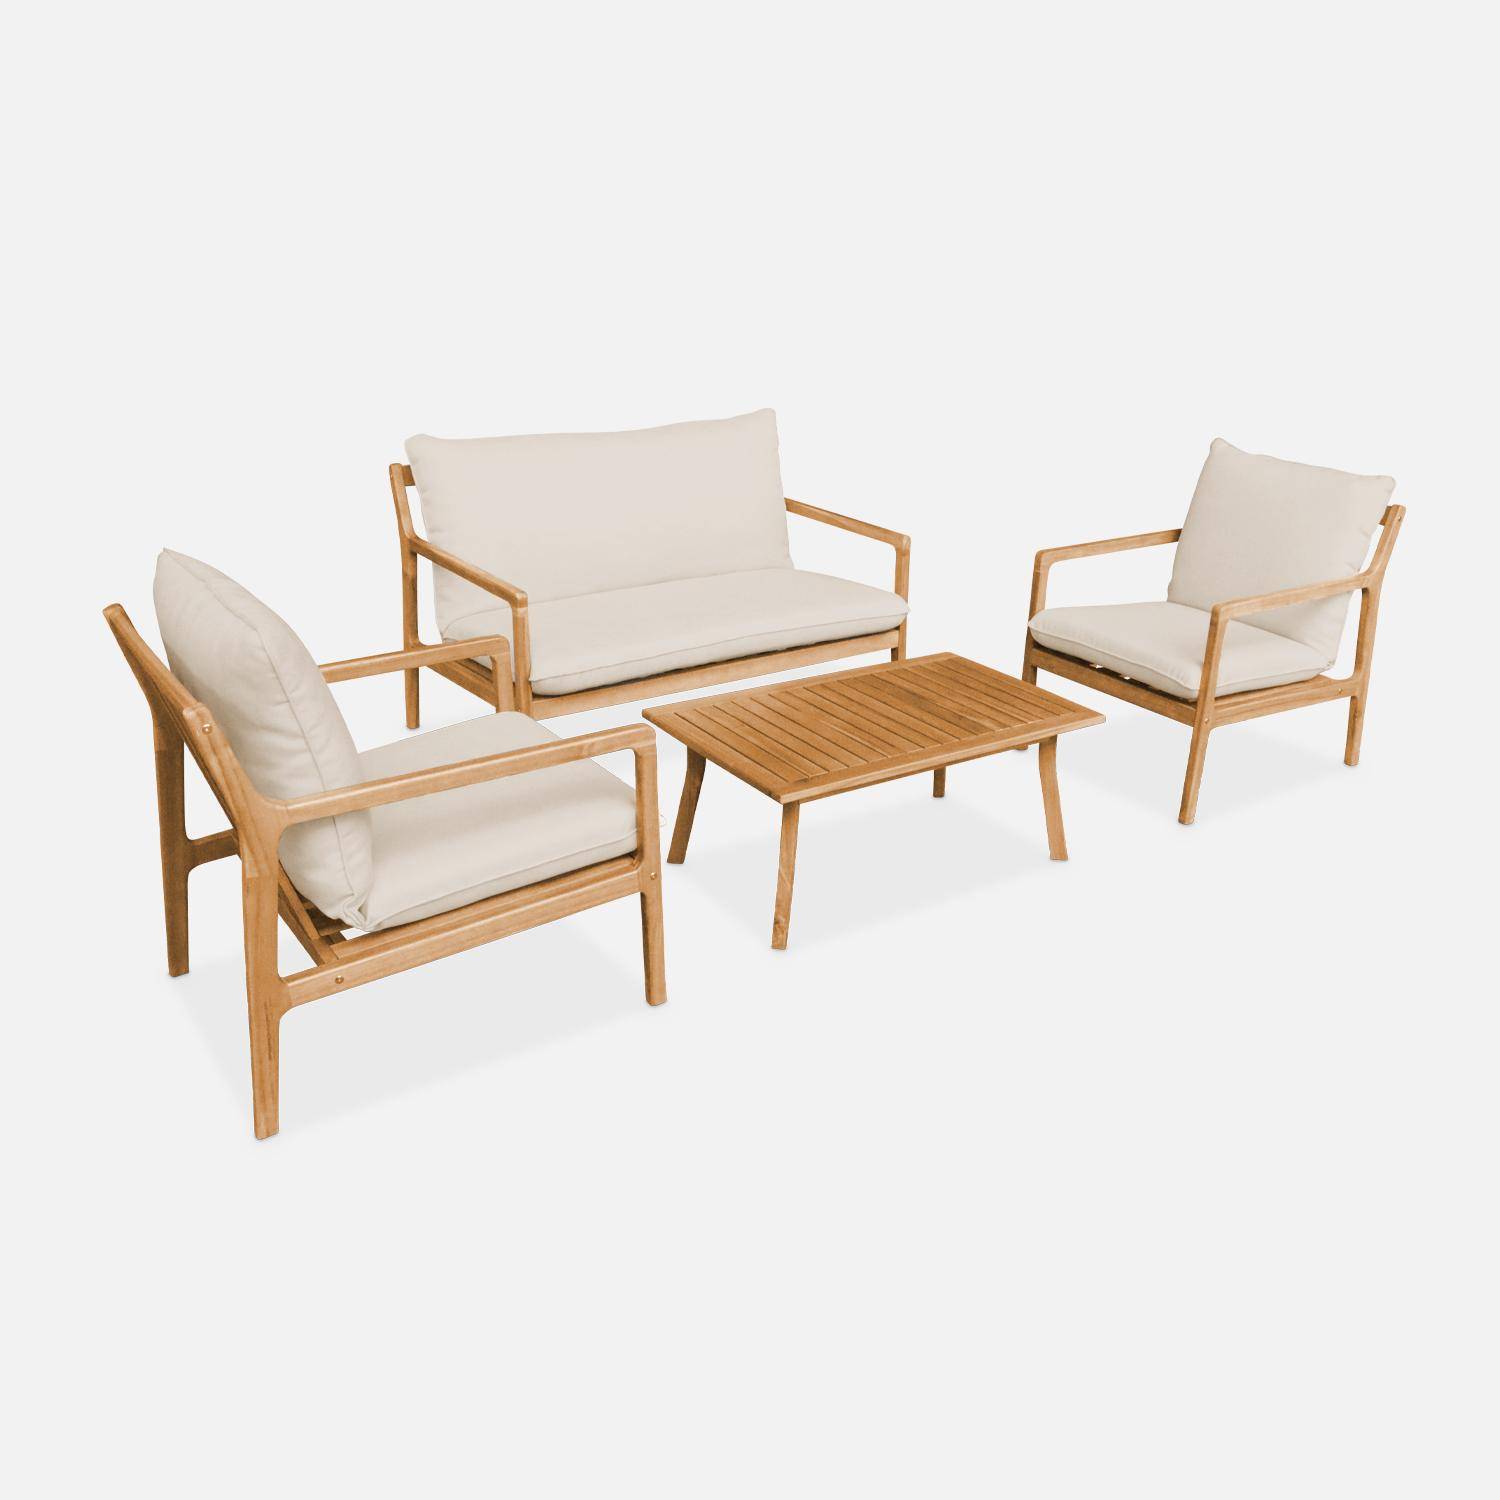 Gartenmöbelset aus FSC-Akazienholz, 1 Tisch, 1 Bank, 2 Sessel, beige, abziehbare Kissenbezüge - Nalda Photo6